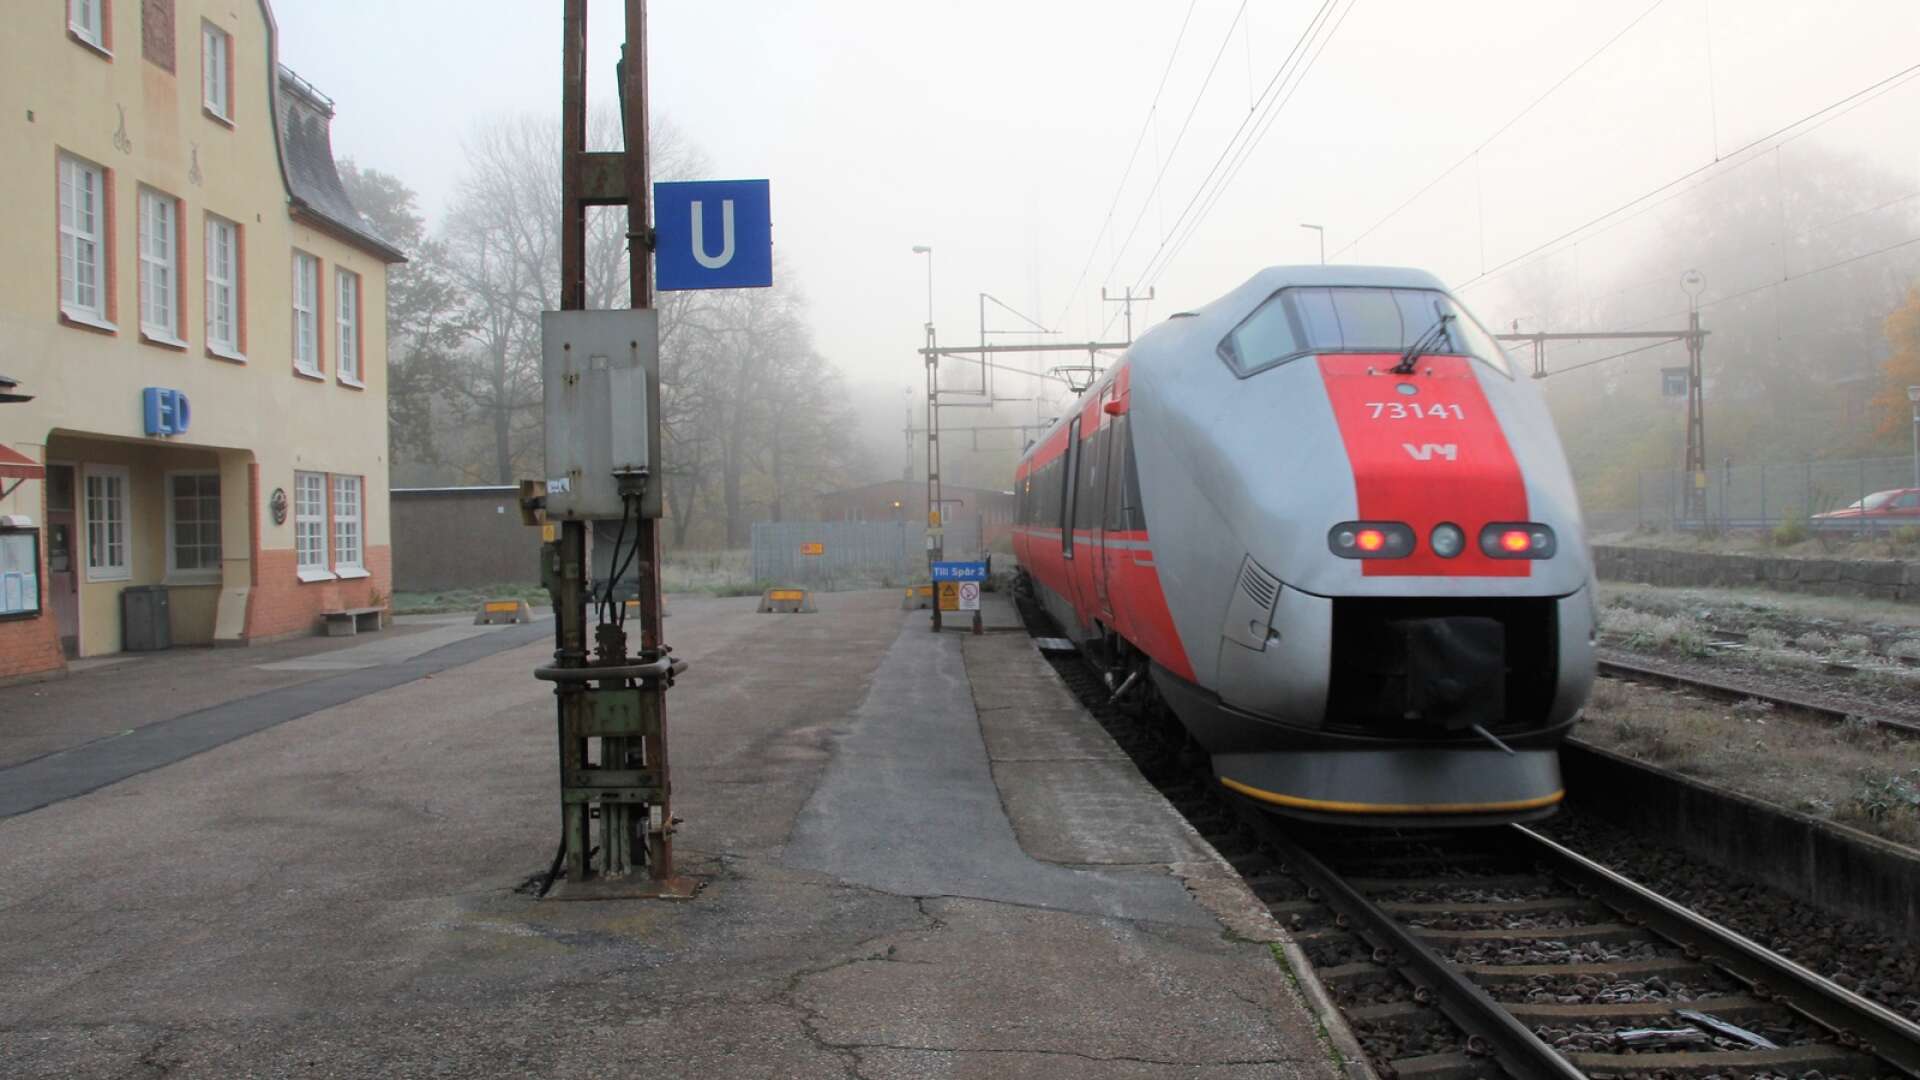 Vy fördubblar antalet tågavgångar mellan Oslo och Göteborg från den 10 december. Det innebär även dubbelt så många stopp i Ed.